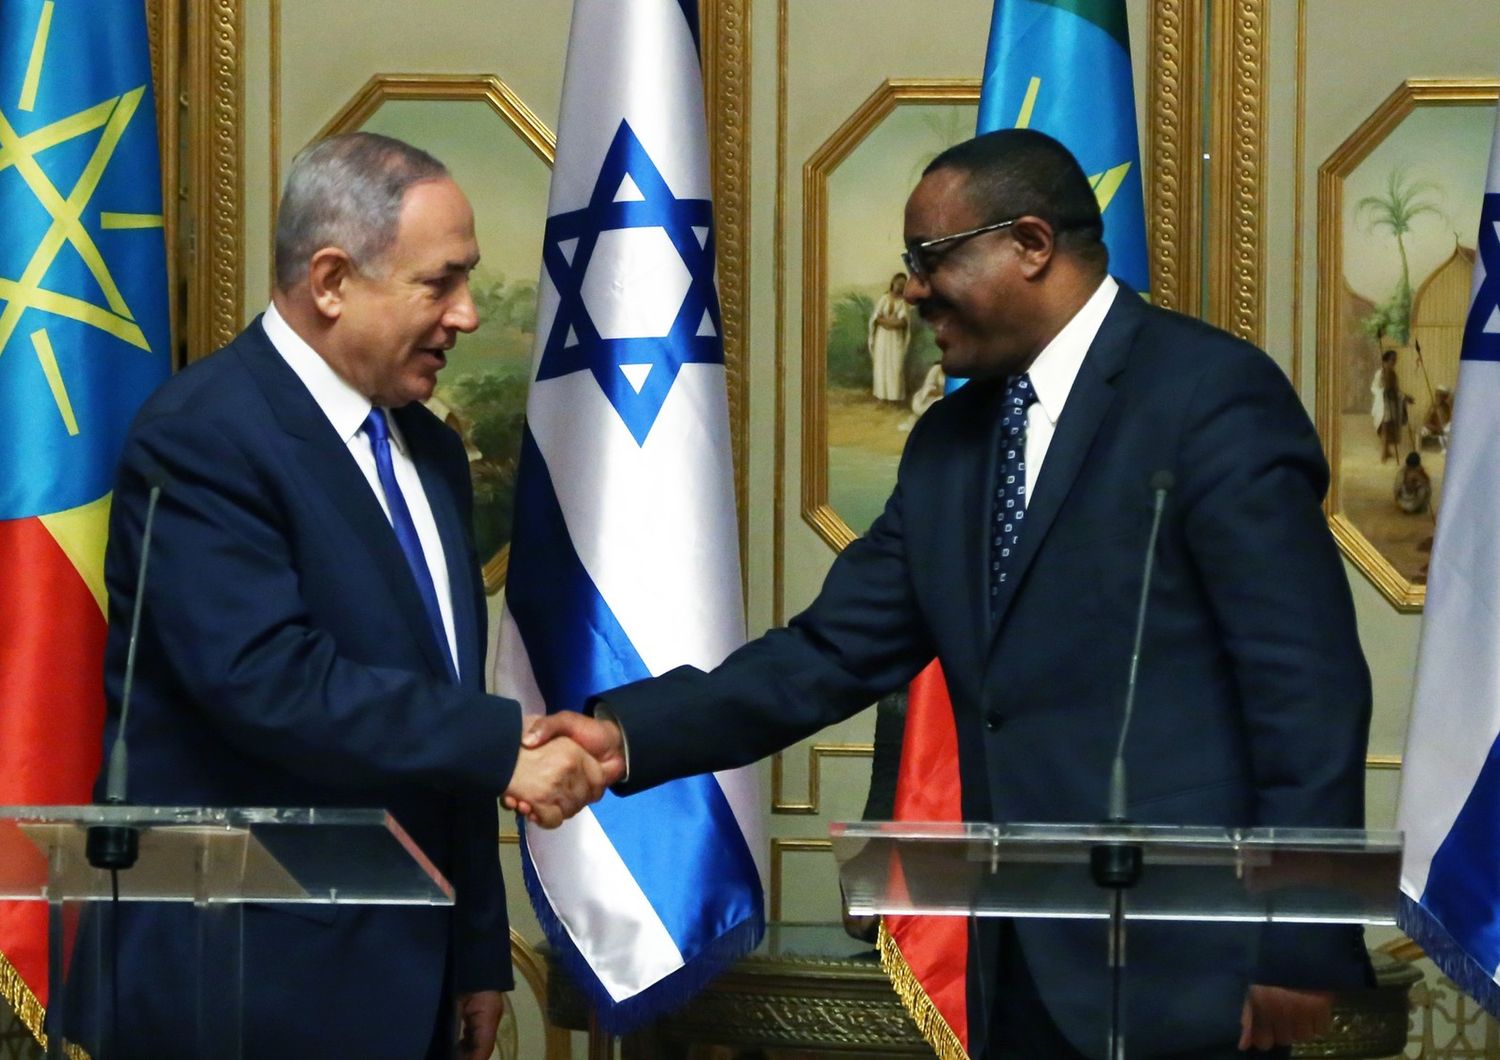 premier Israele Benjamin Netanyahu e premier Etiopia Hailemariam Desalegn (Afp)